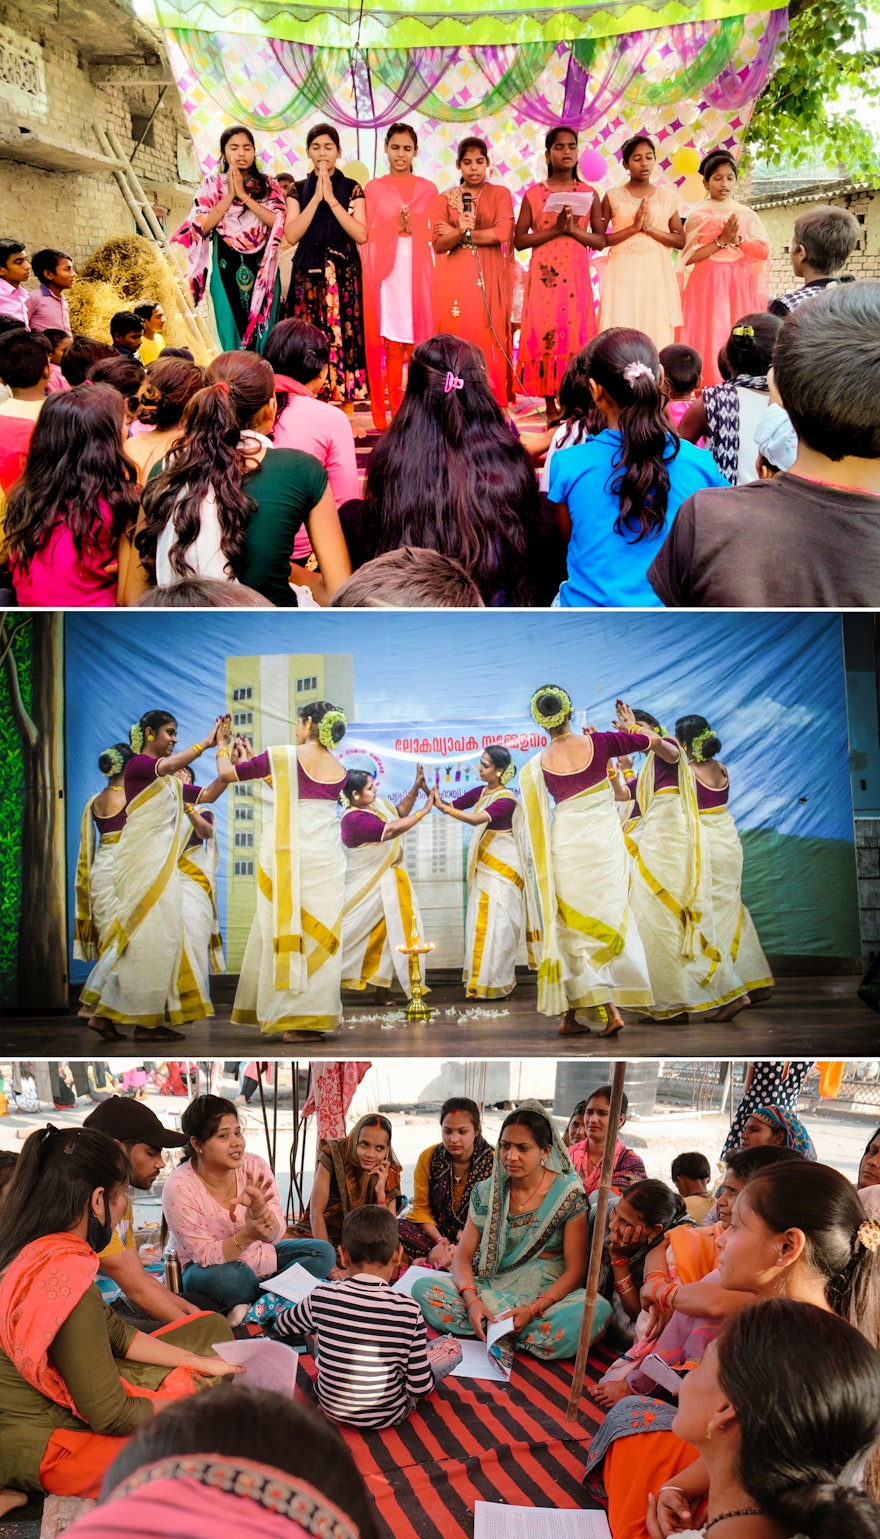 شرکت‌کنندگان در کنفرانس‌های محلی در بیهار و دهلی نو در هند. عکس میانی شرکت‌کنندگان را در حال اجرای رقصی محلی نشان می‌دهد.